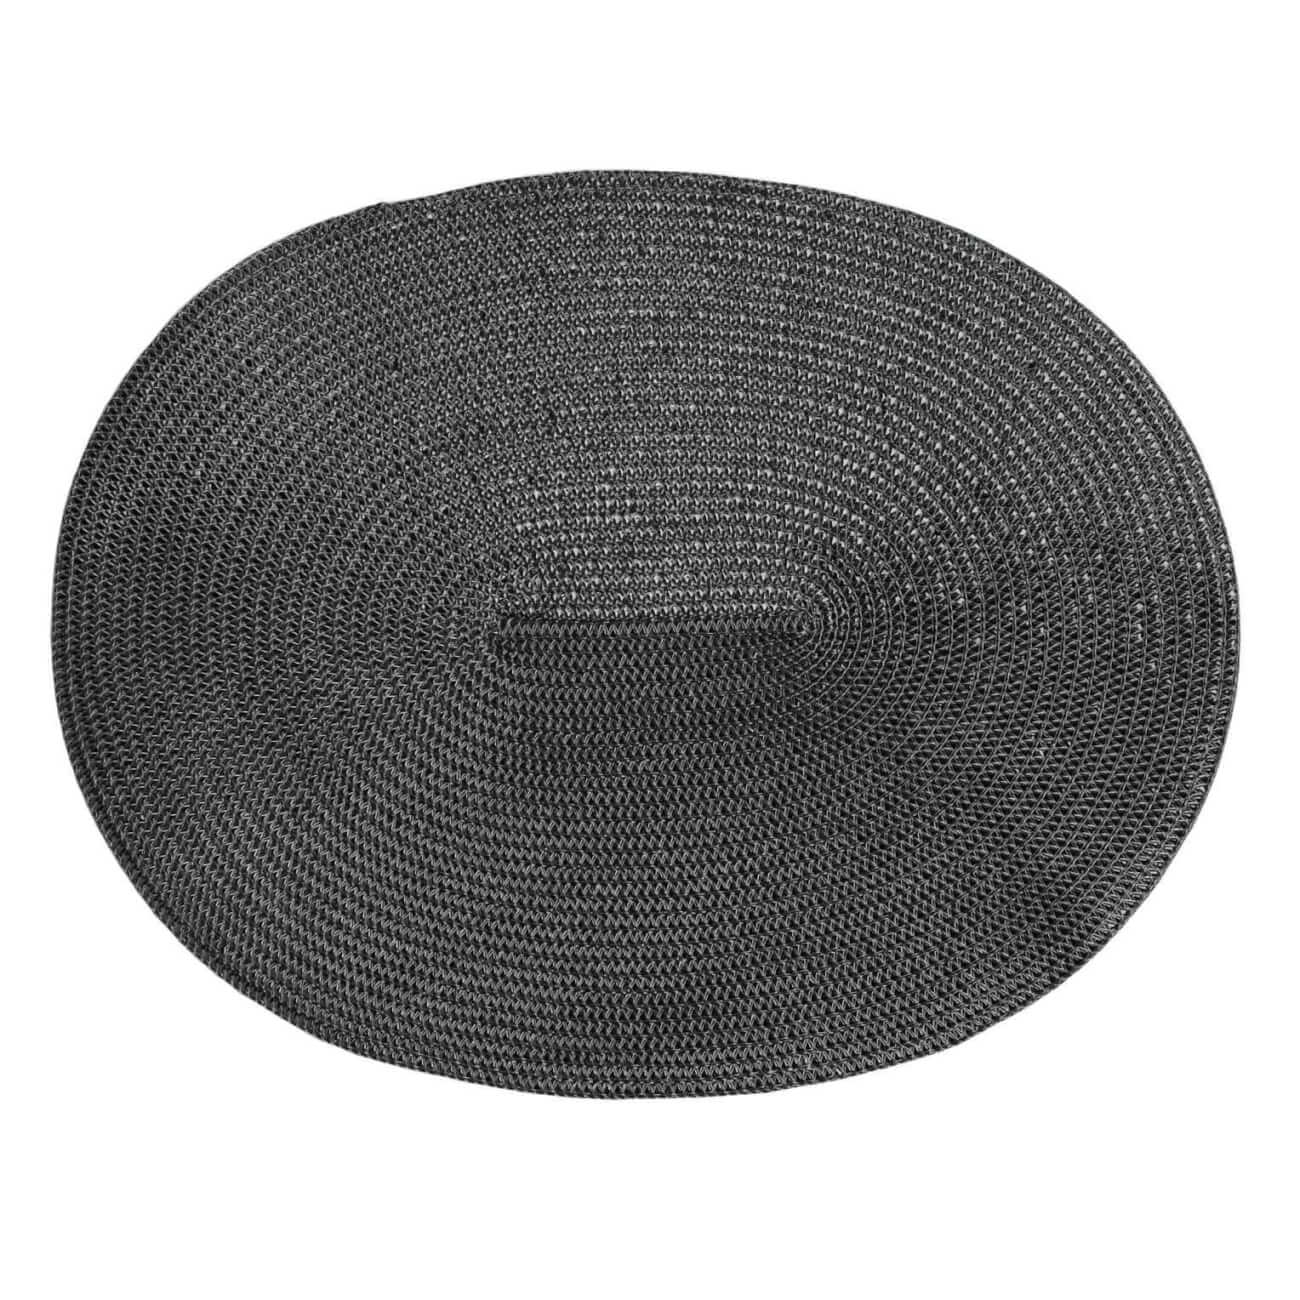 Салфетка под приборы, 30х45 см, полиэстер, овальная, черная, Circle shine салфетка микрофибра ladina